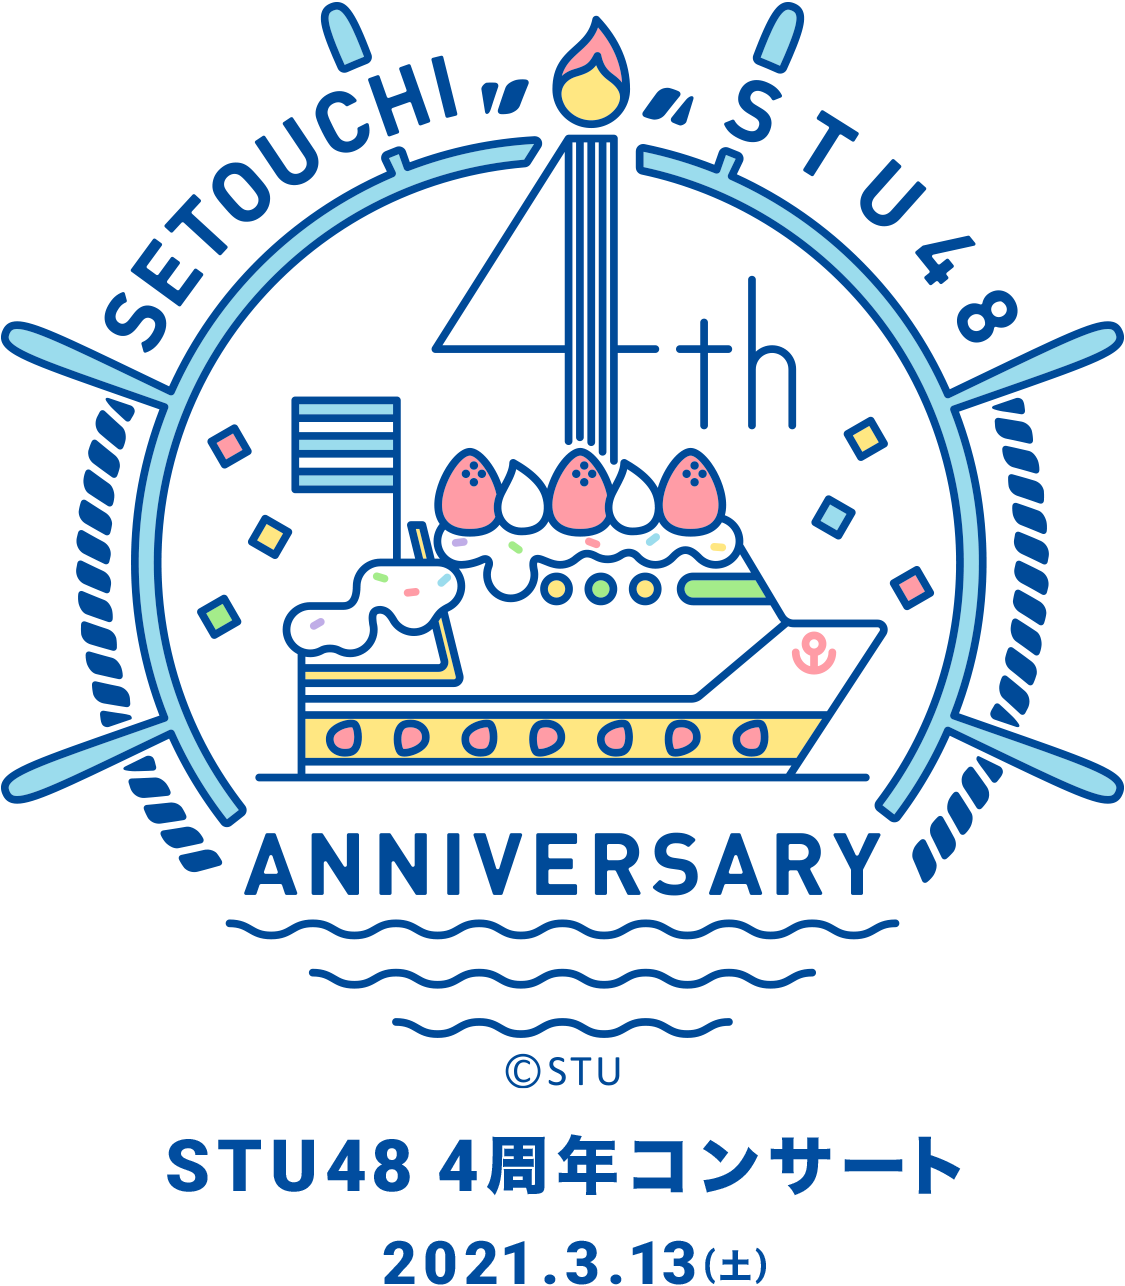 STU48 4周年コンサート